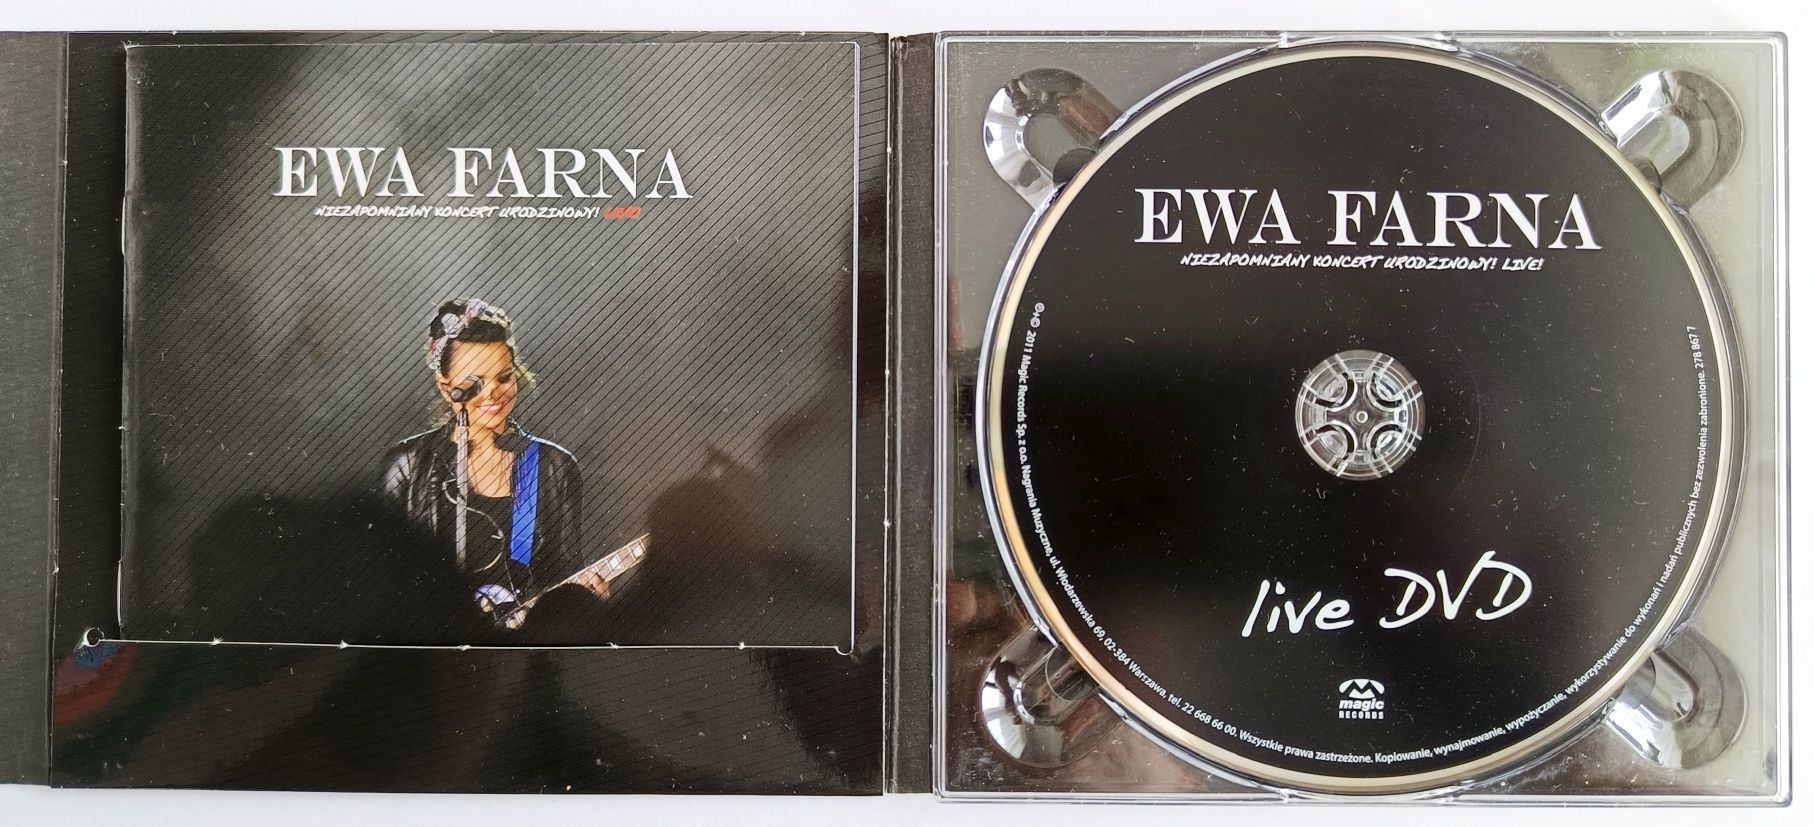 Ewa Farna Live Niezapomniany Koncert Urodzinowy CD+DVD 2011r